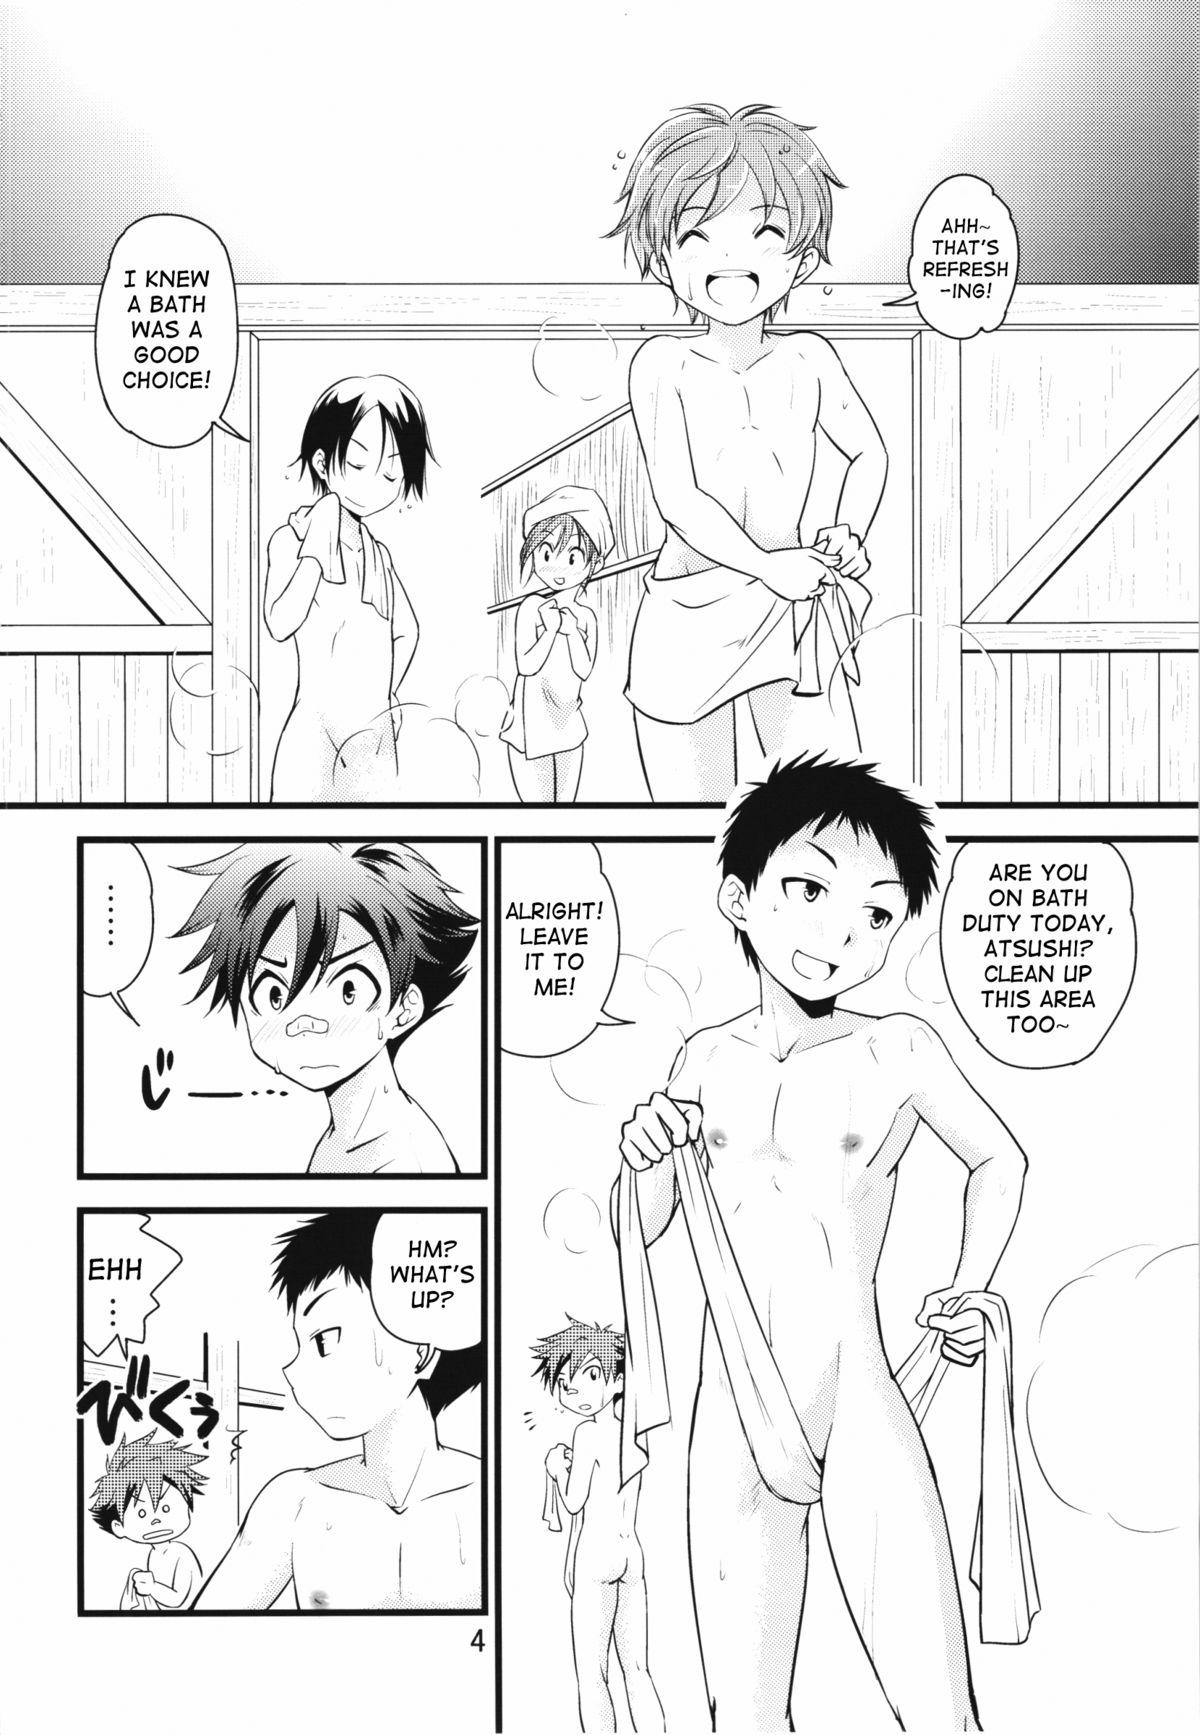 Ball Busting Atsu~ku Aishite - Touken ranbu Teenporn - Page 3